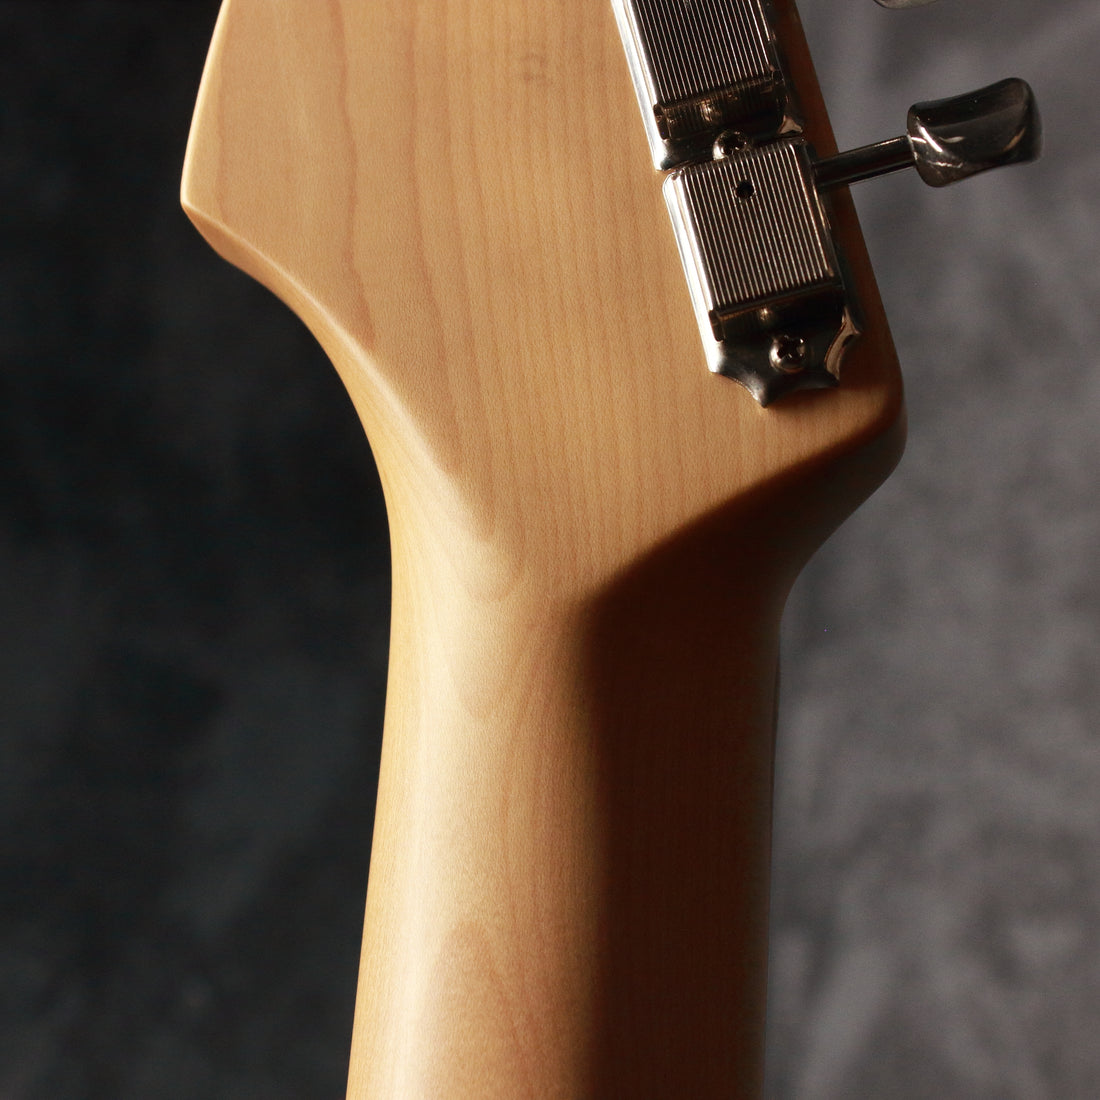 Fender Made in Japan Hybrid 60s Stratocaster Burgundy Mist Metallic 2019